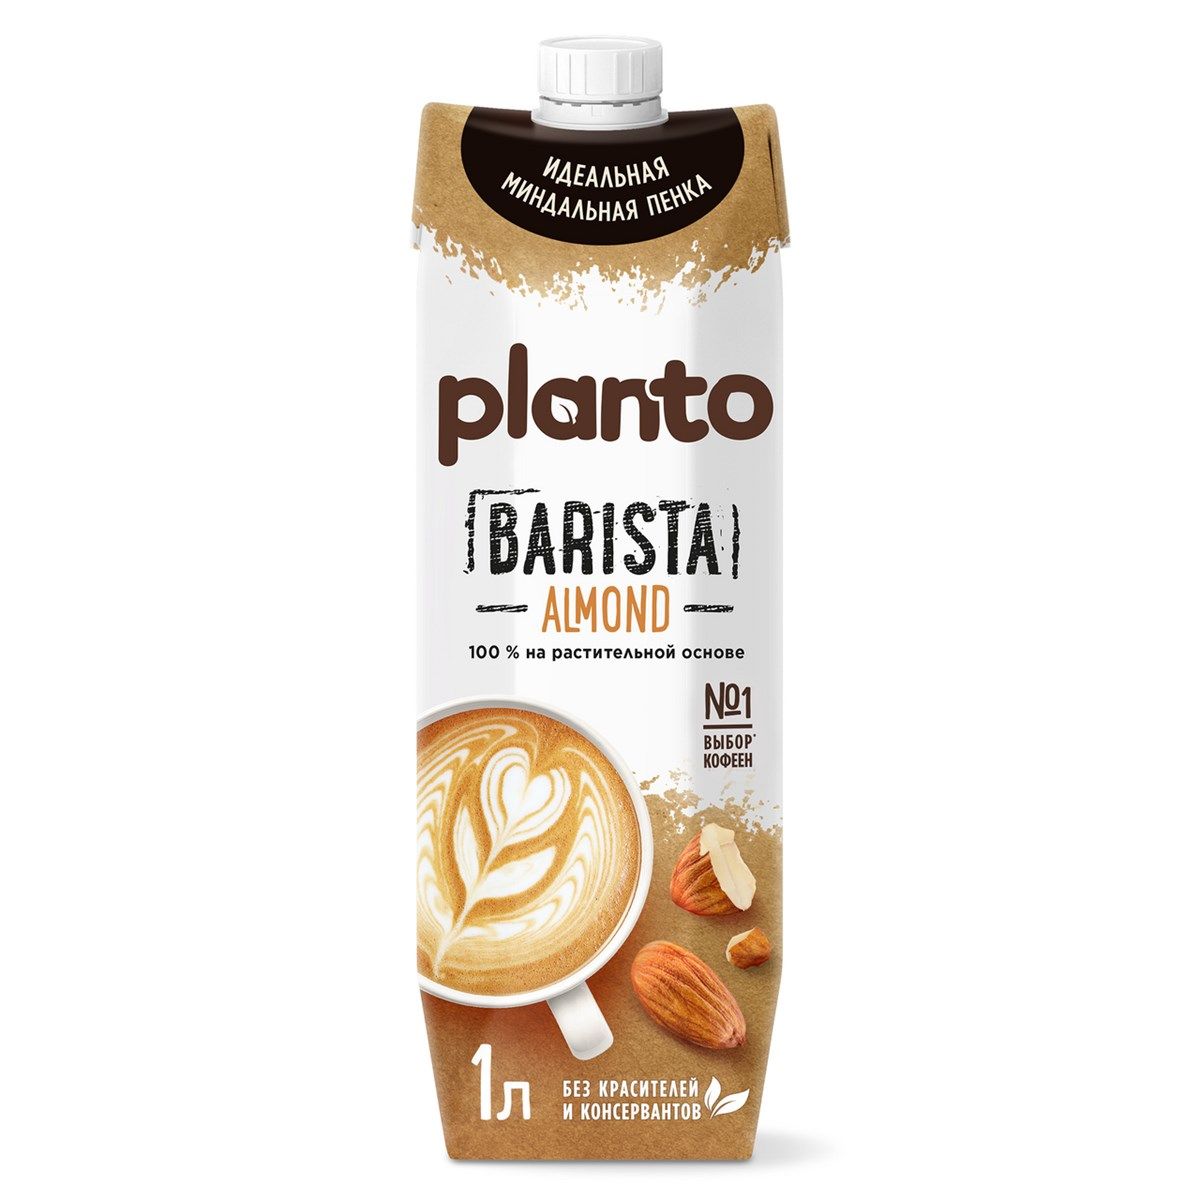 PLANTO - Barista Almond растительный напиток TetraPak 1л